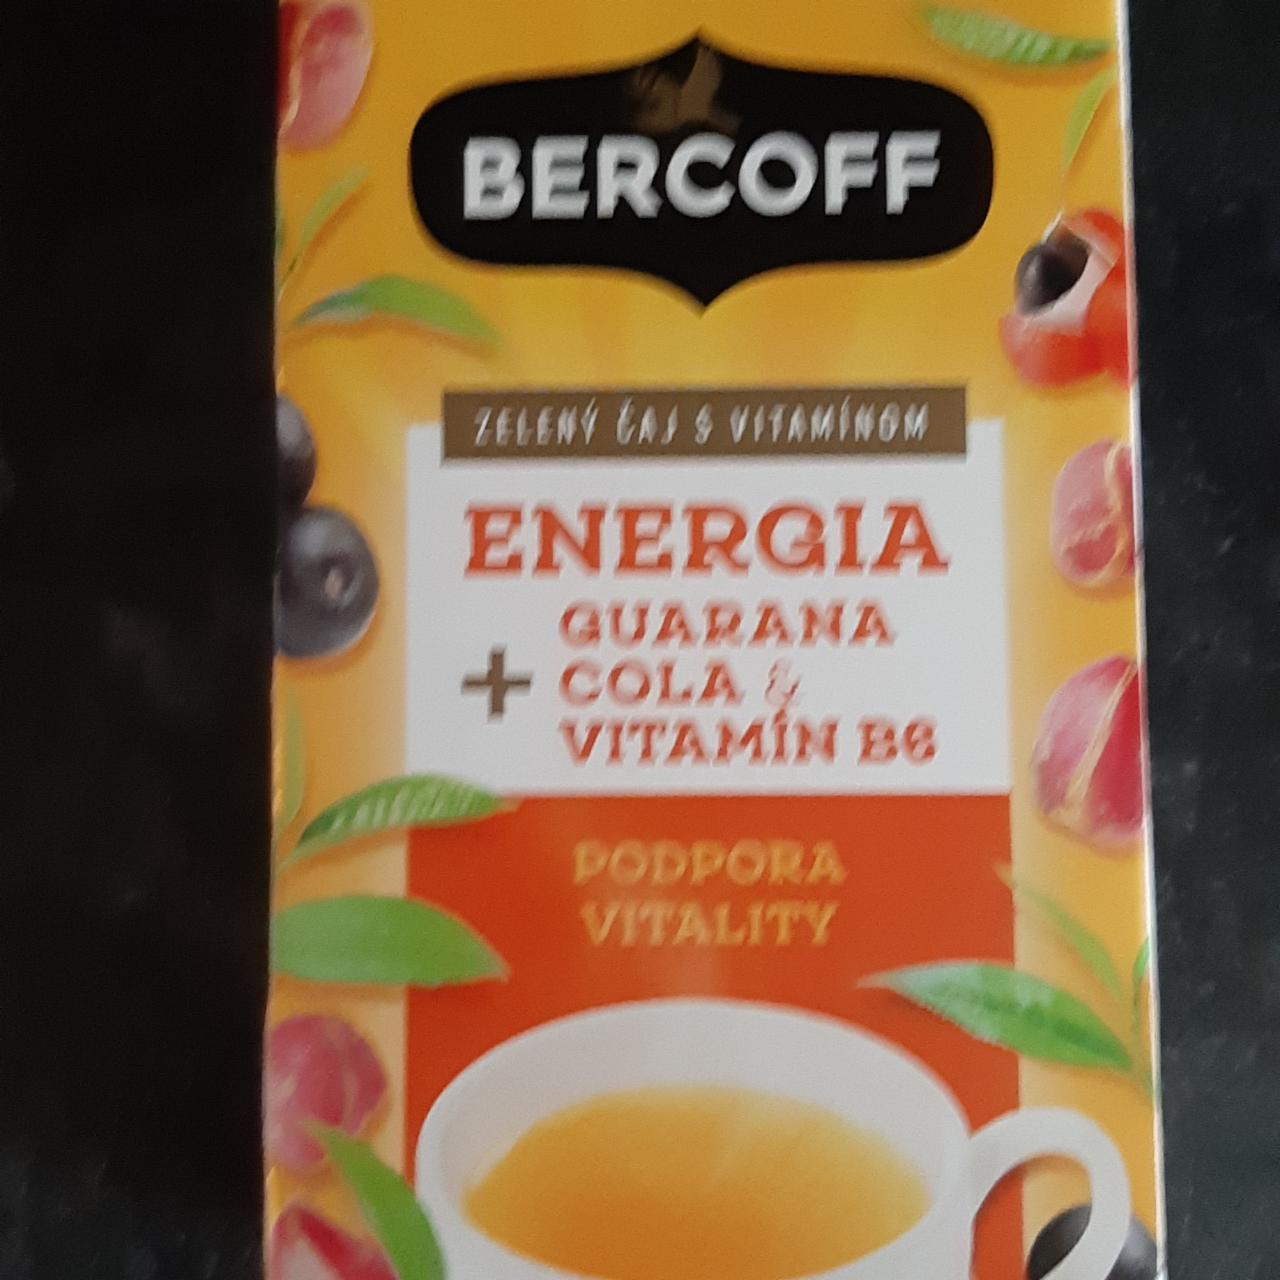 Fotografie - Zelený čaj s vitamínom Enegria=guarana cola vitamín B6 Bercoff